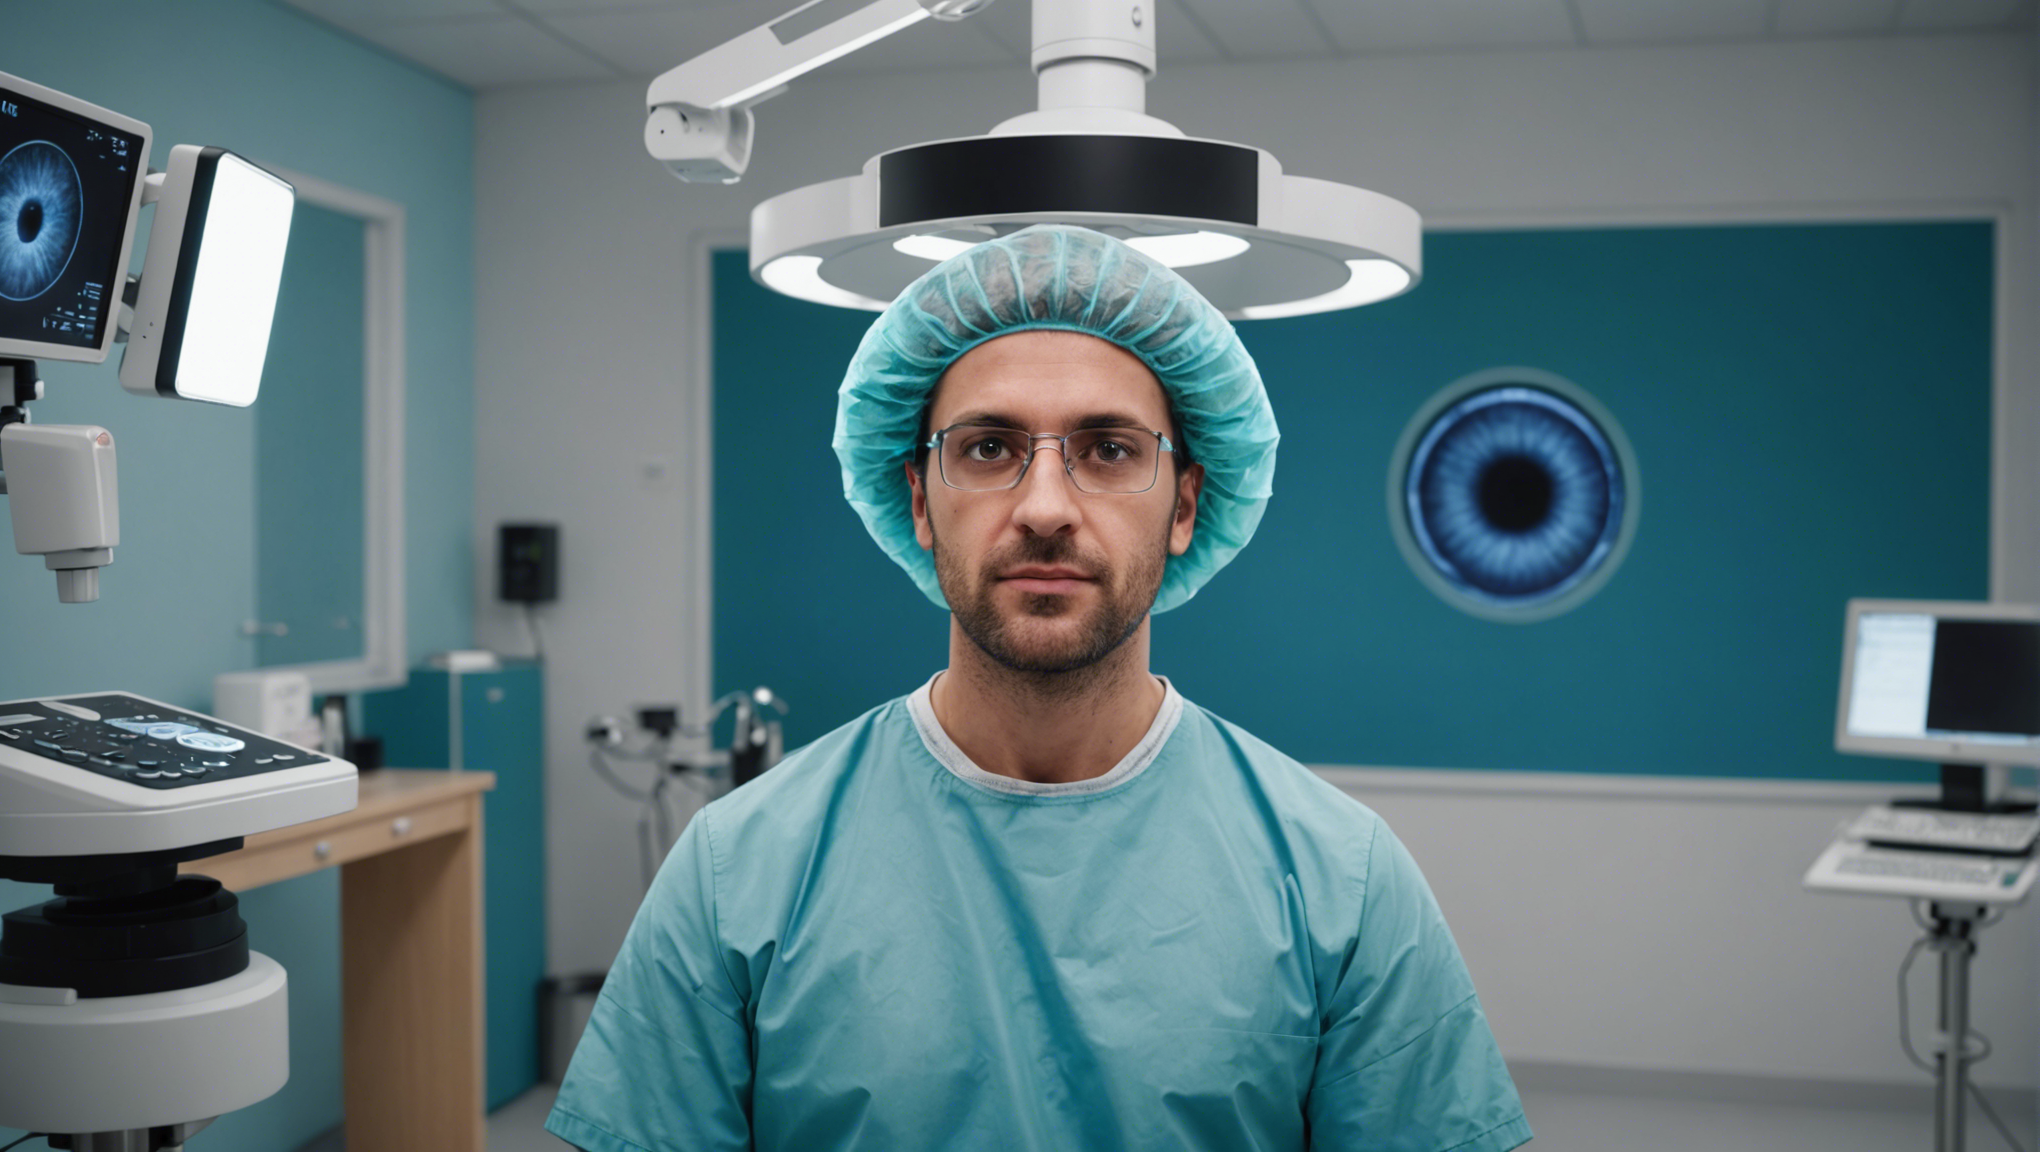 découvrez l'opération des yeux à saint-denis, une solution miracle pour retrouver une vision parfaite. informez-vous sur cette intervention et ses bénéfices potentiels.